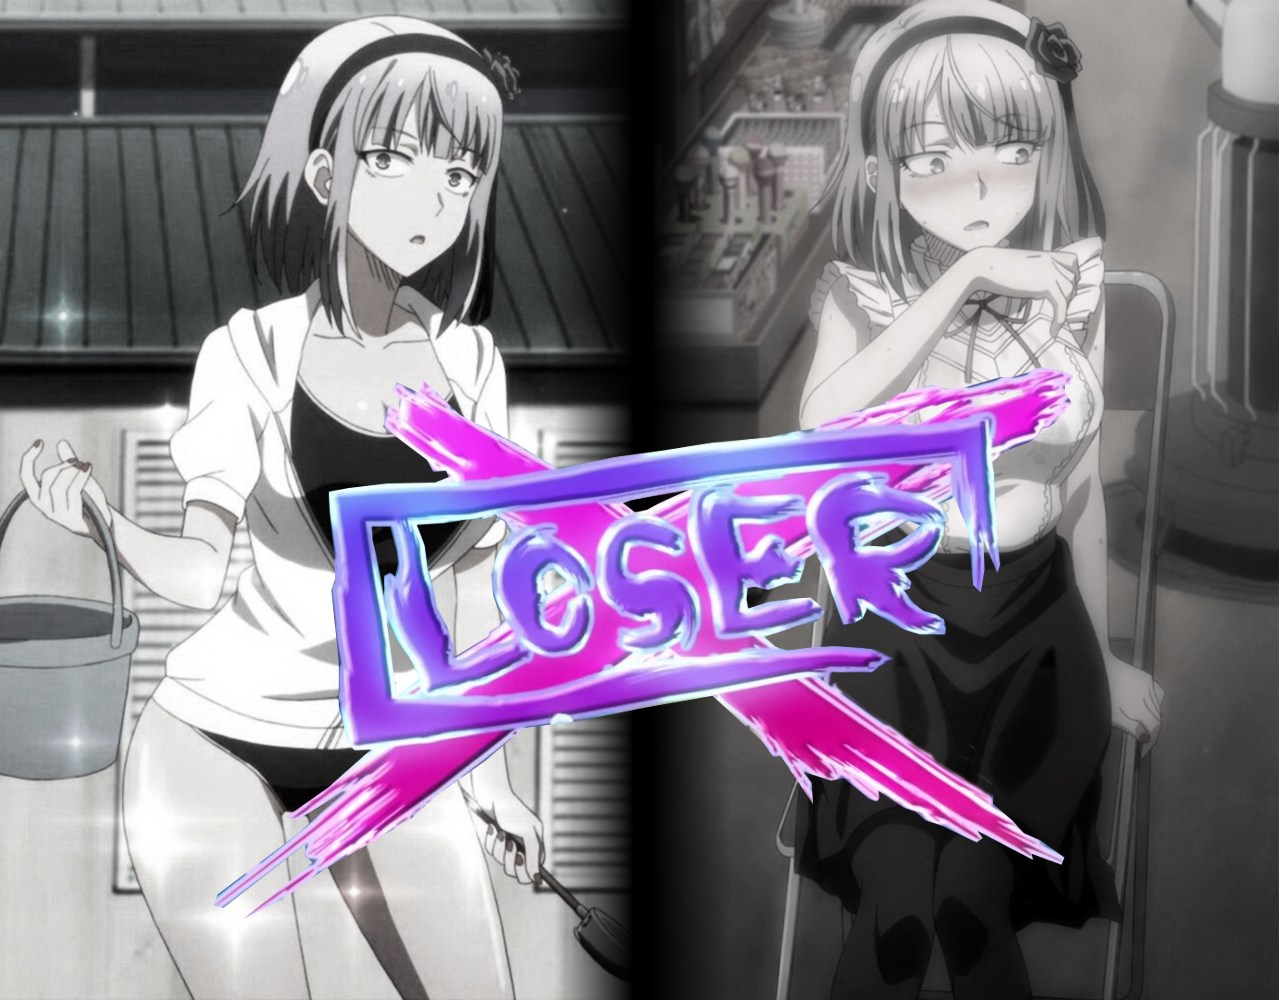 Losers - Hotaru